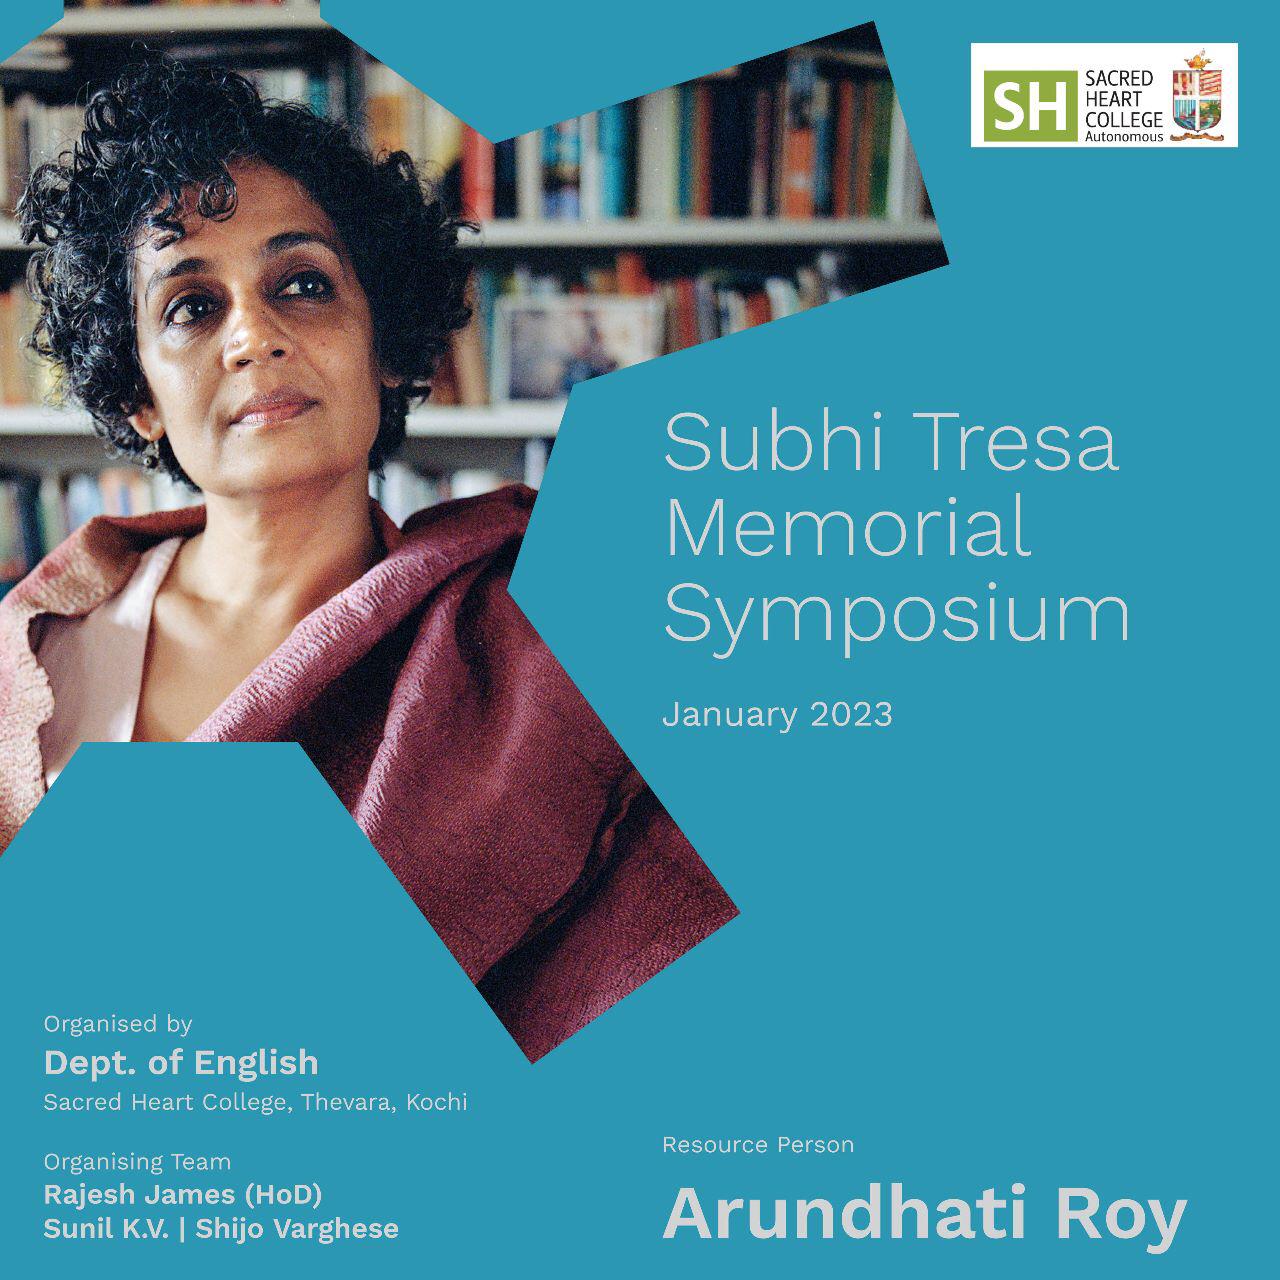 Subhi Tresa Memorial Symposium